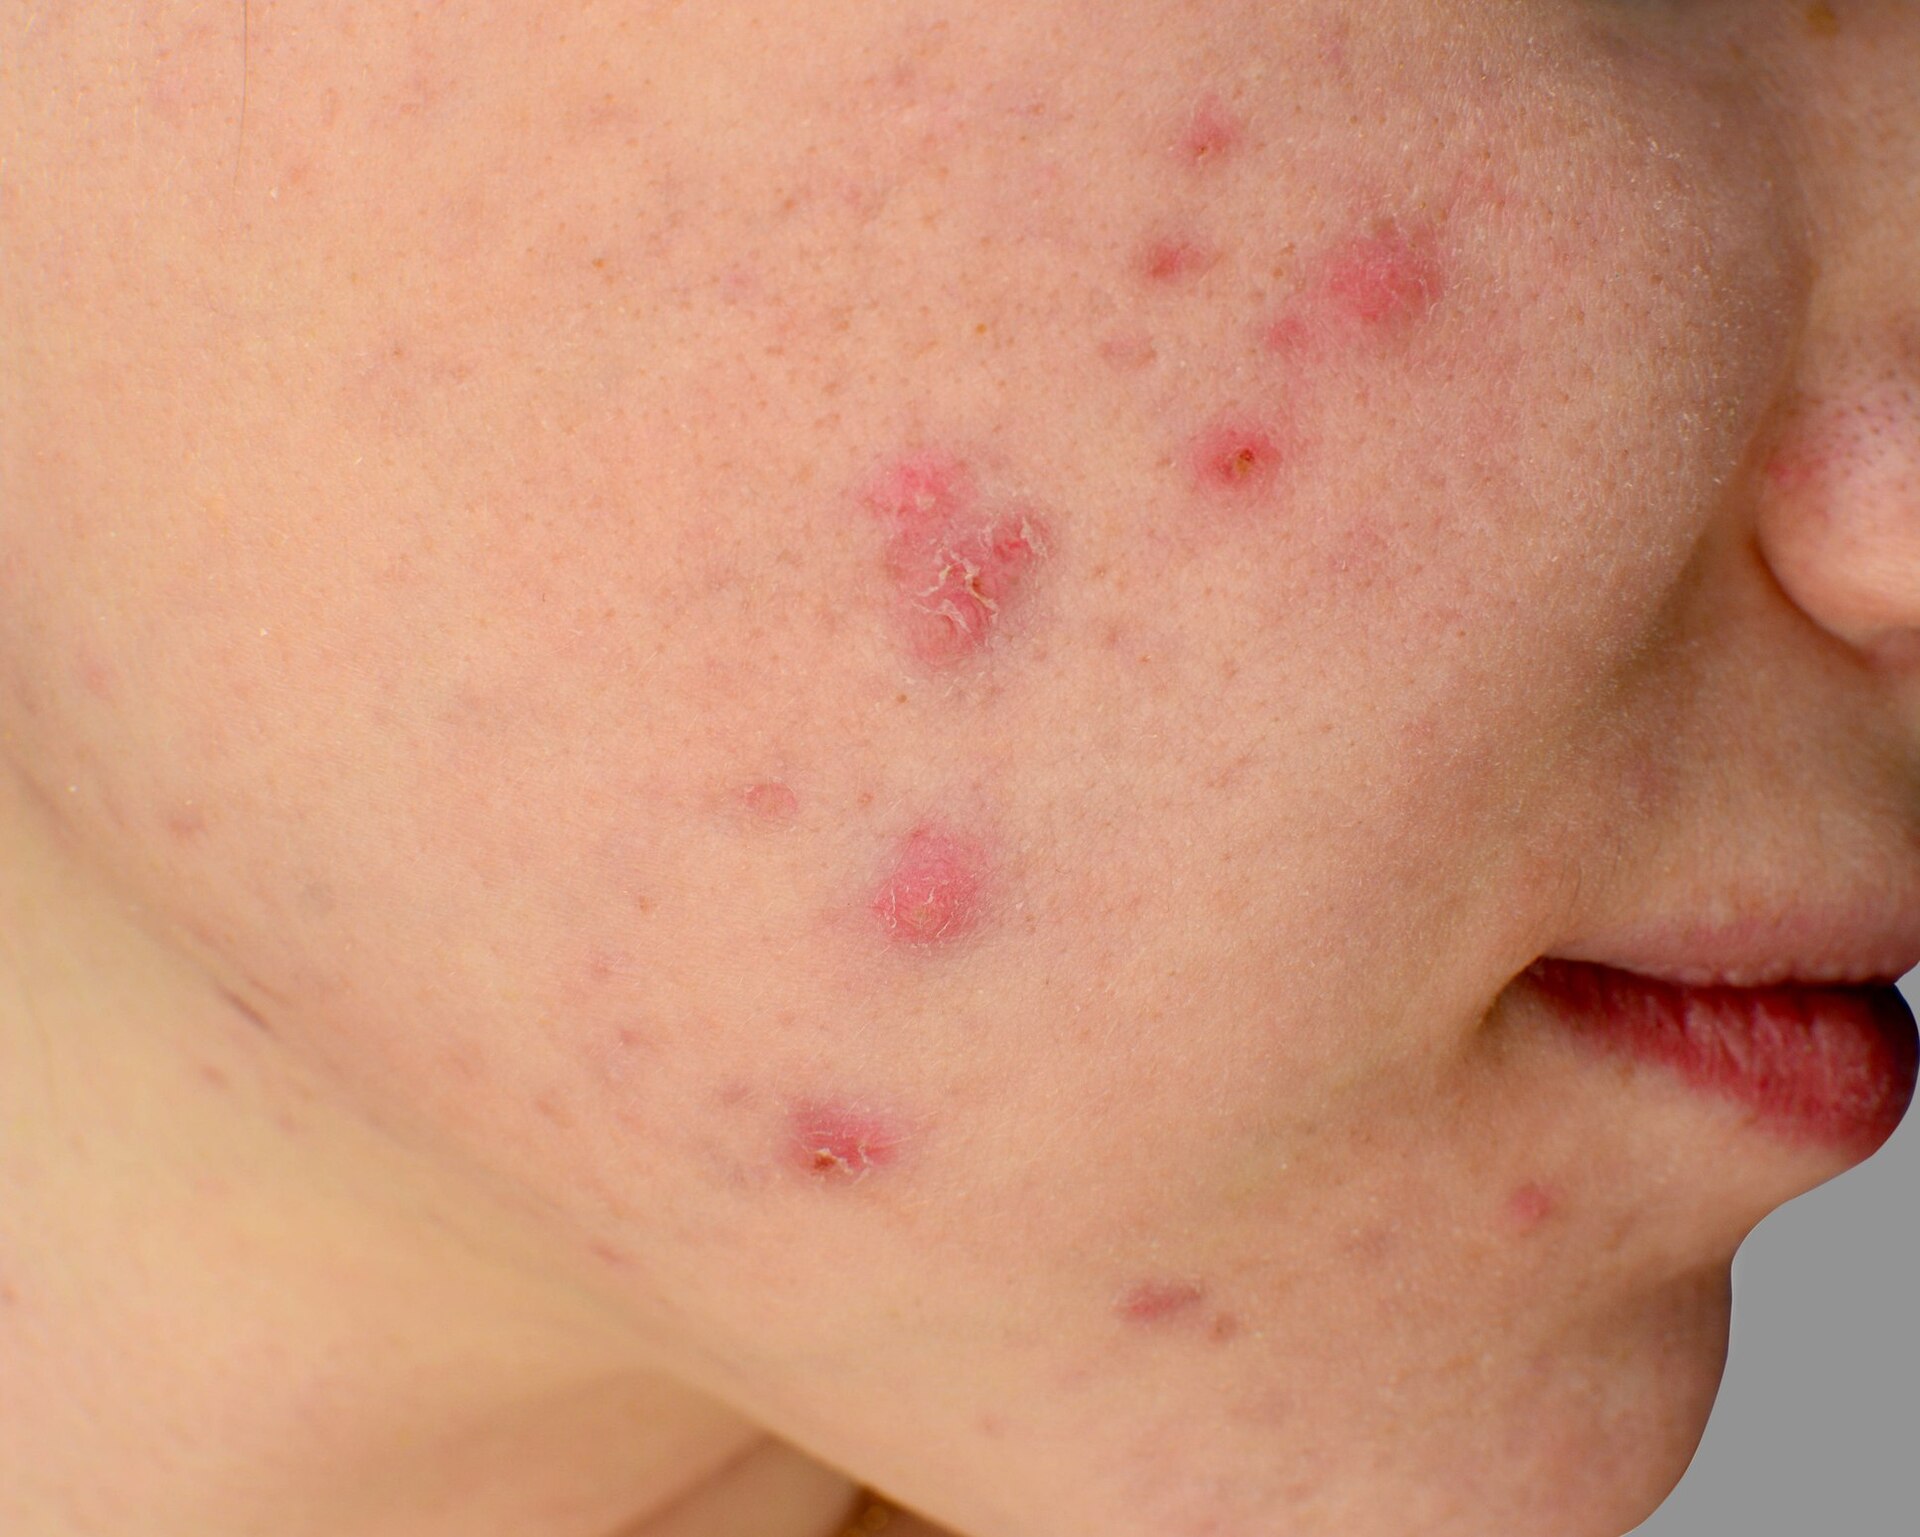 Se feita da maneira incorreta, a limpeza de pele pode agravar seu quadro de acne